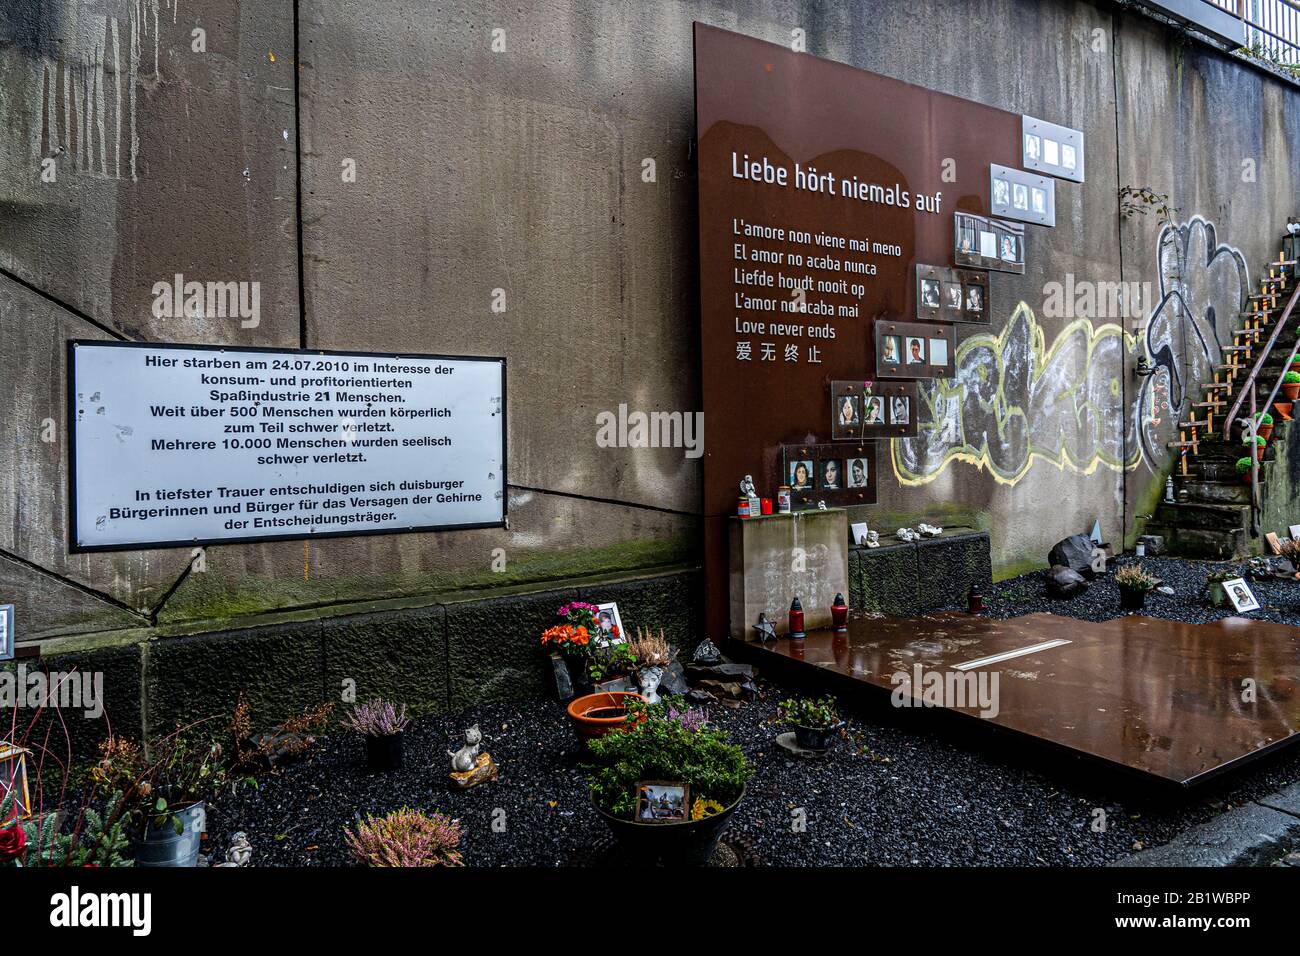 Mémorial des victimes de la catastrophe de la Parade de de l'Amour, 24 juin 2010, dans laquelle 21 personnes sont mortes et plus de 500 ont été grièvement blessées, sur le site du TH Banque D'Images